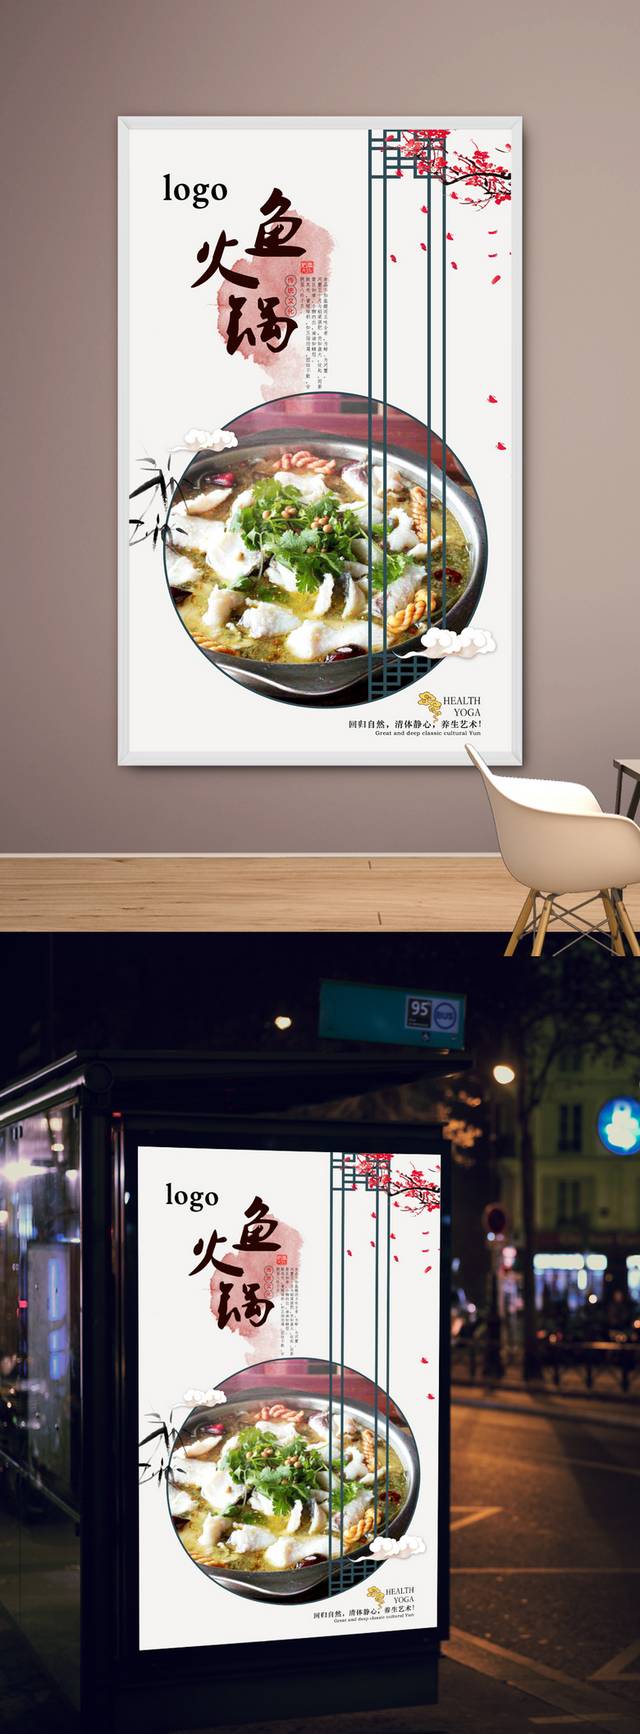 精美鱼火锅美食促销宣传海报设计